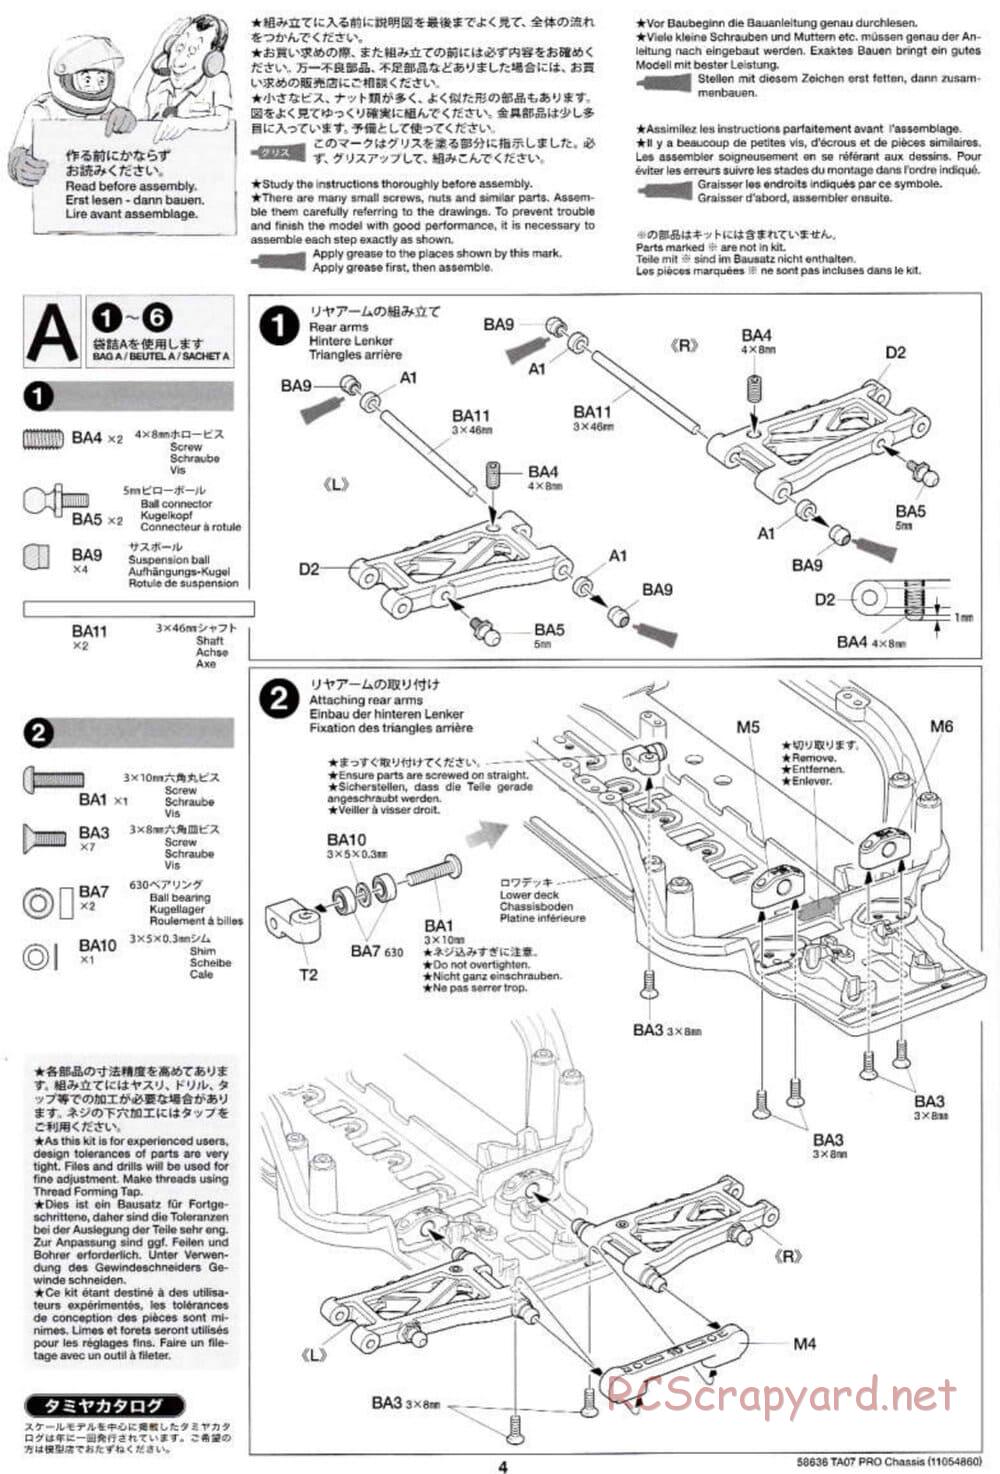 Tamiya - TA07 Pro Chassis - Manual - Page 4